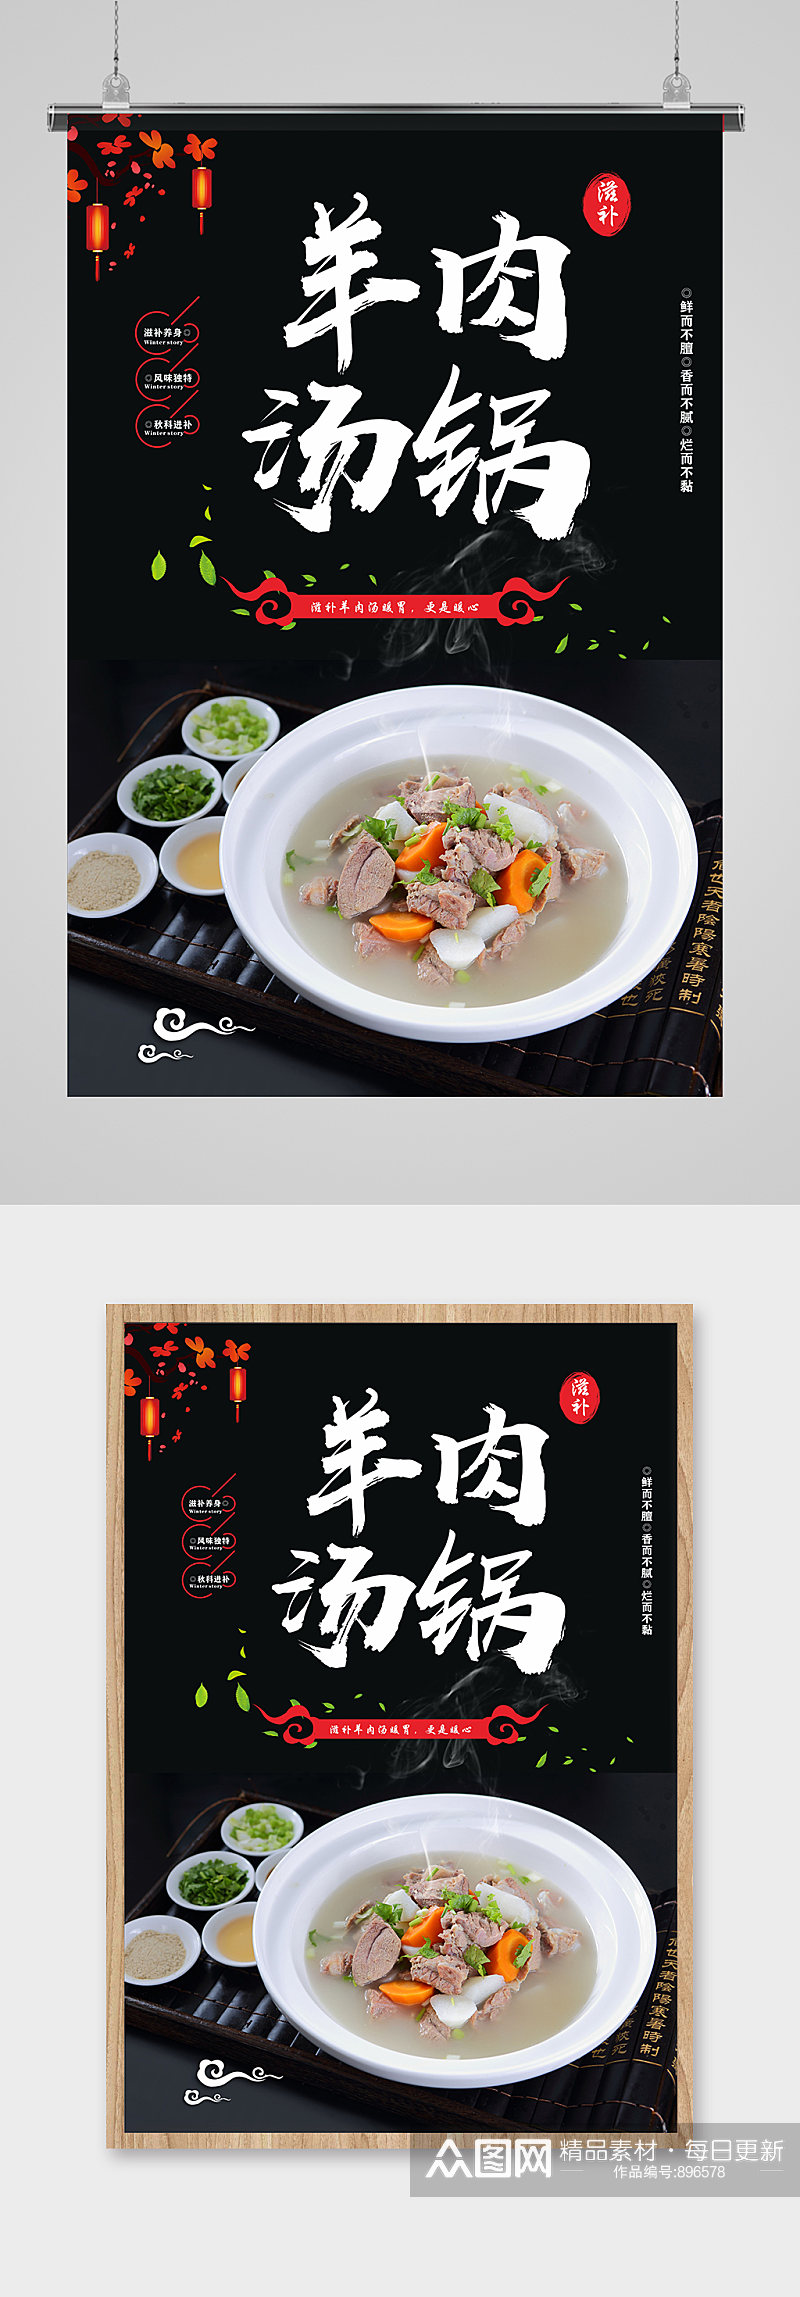 中国风羊肉汤美食海报素材